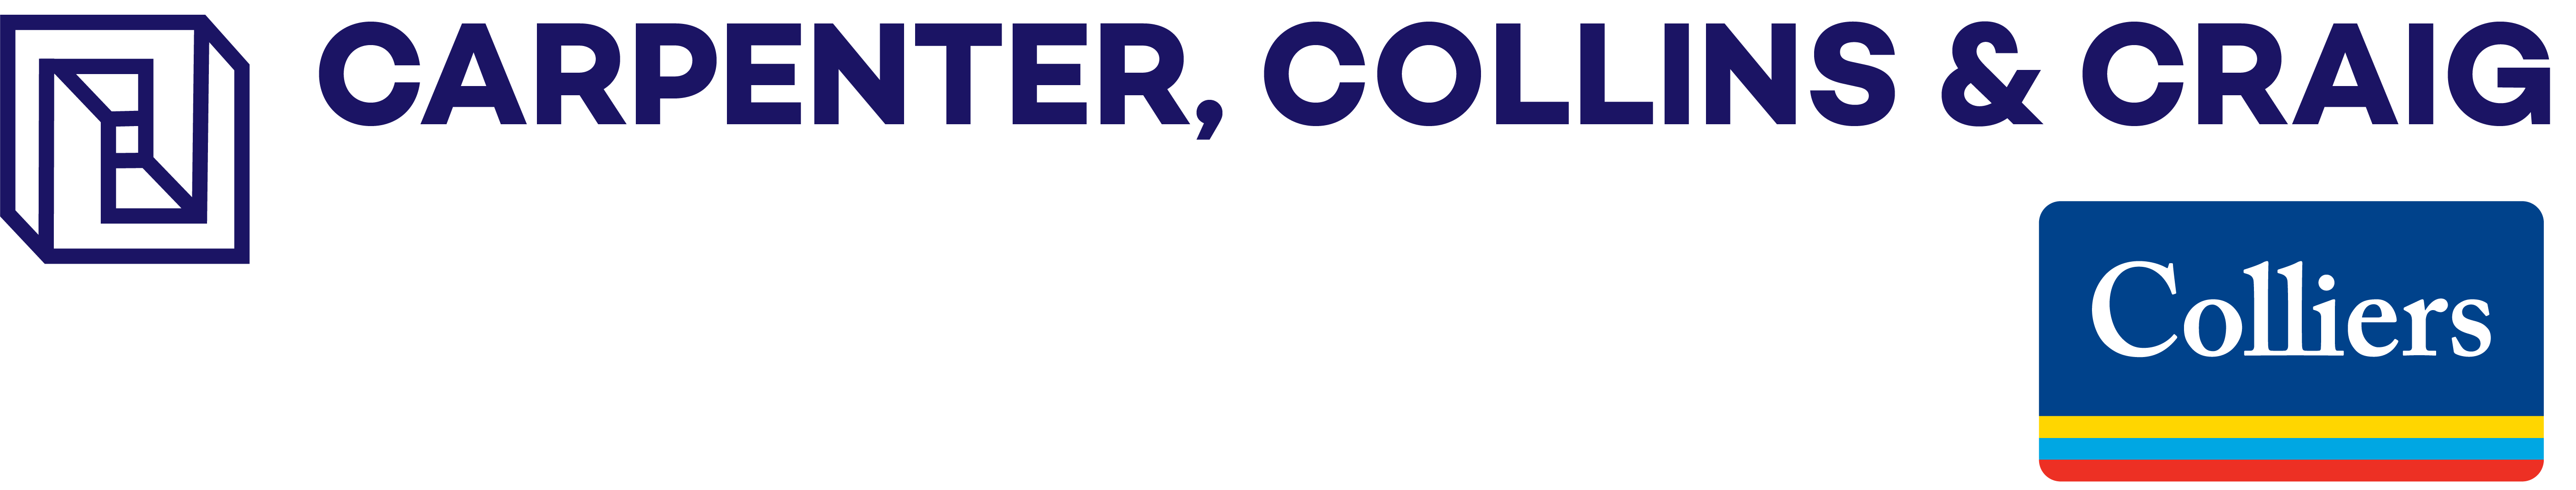 Carpenter, Collins & Craig Logo - Colliers 2